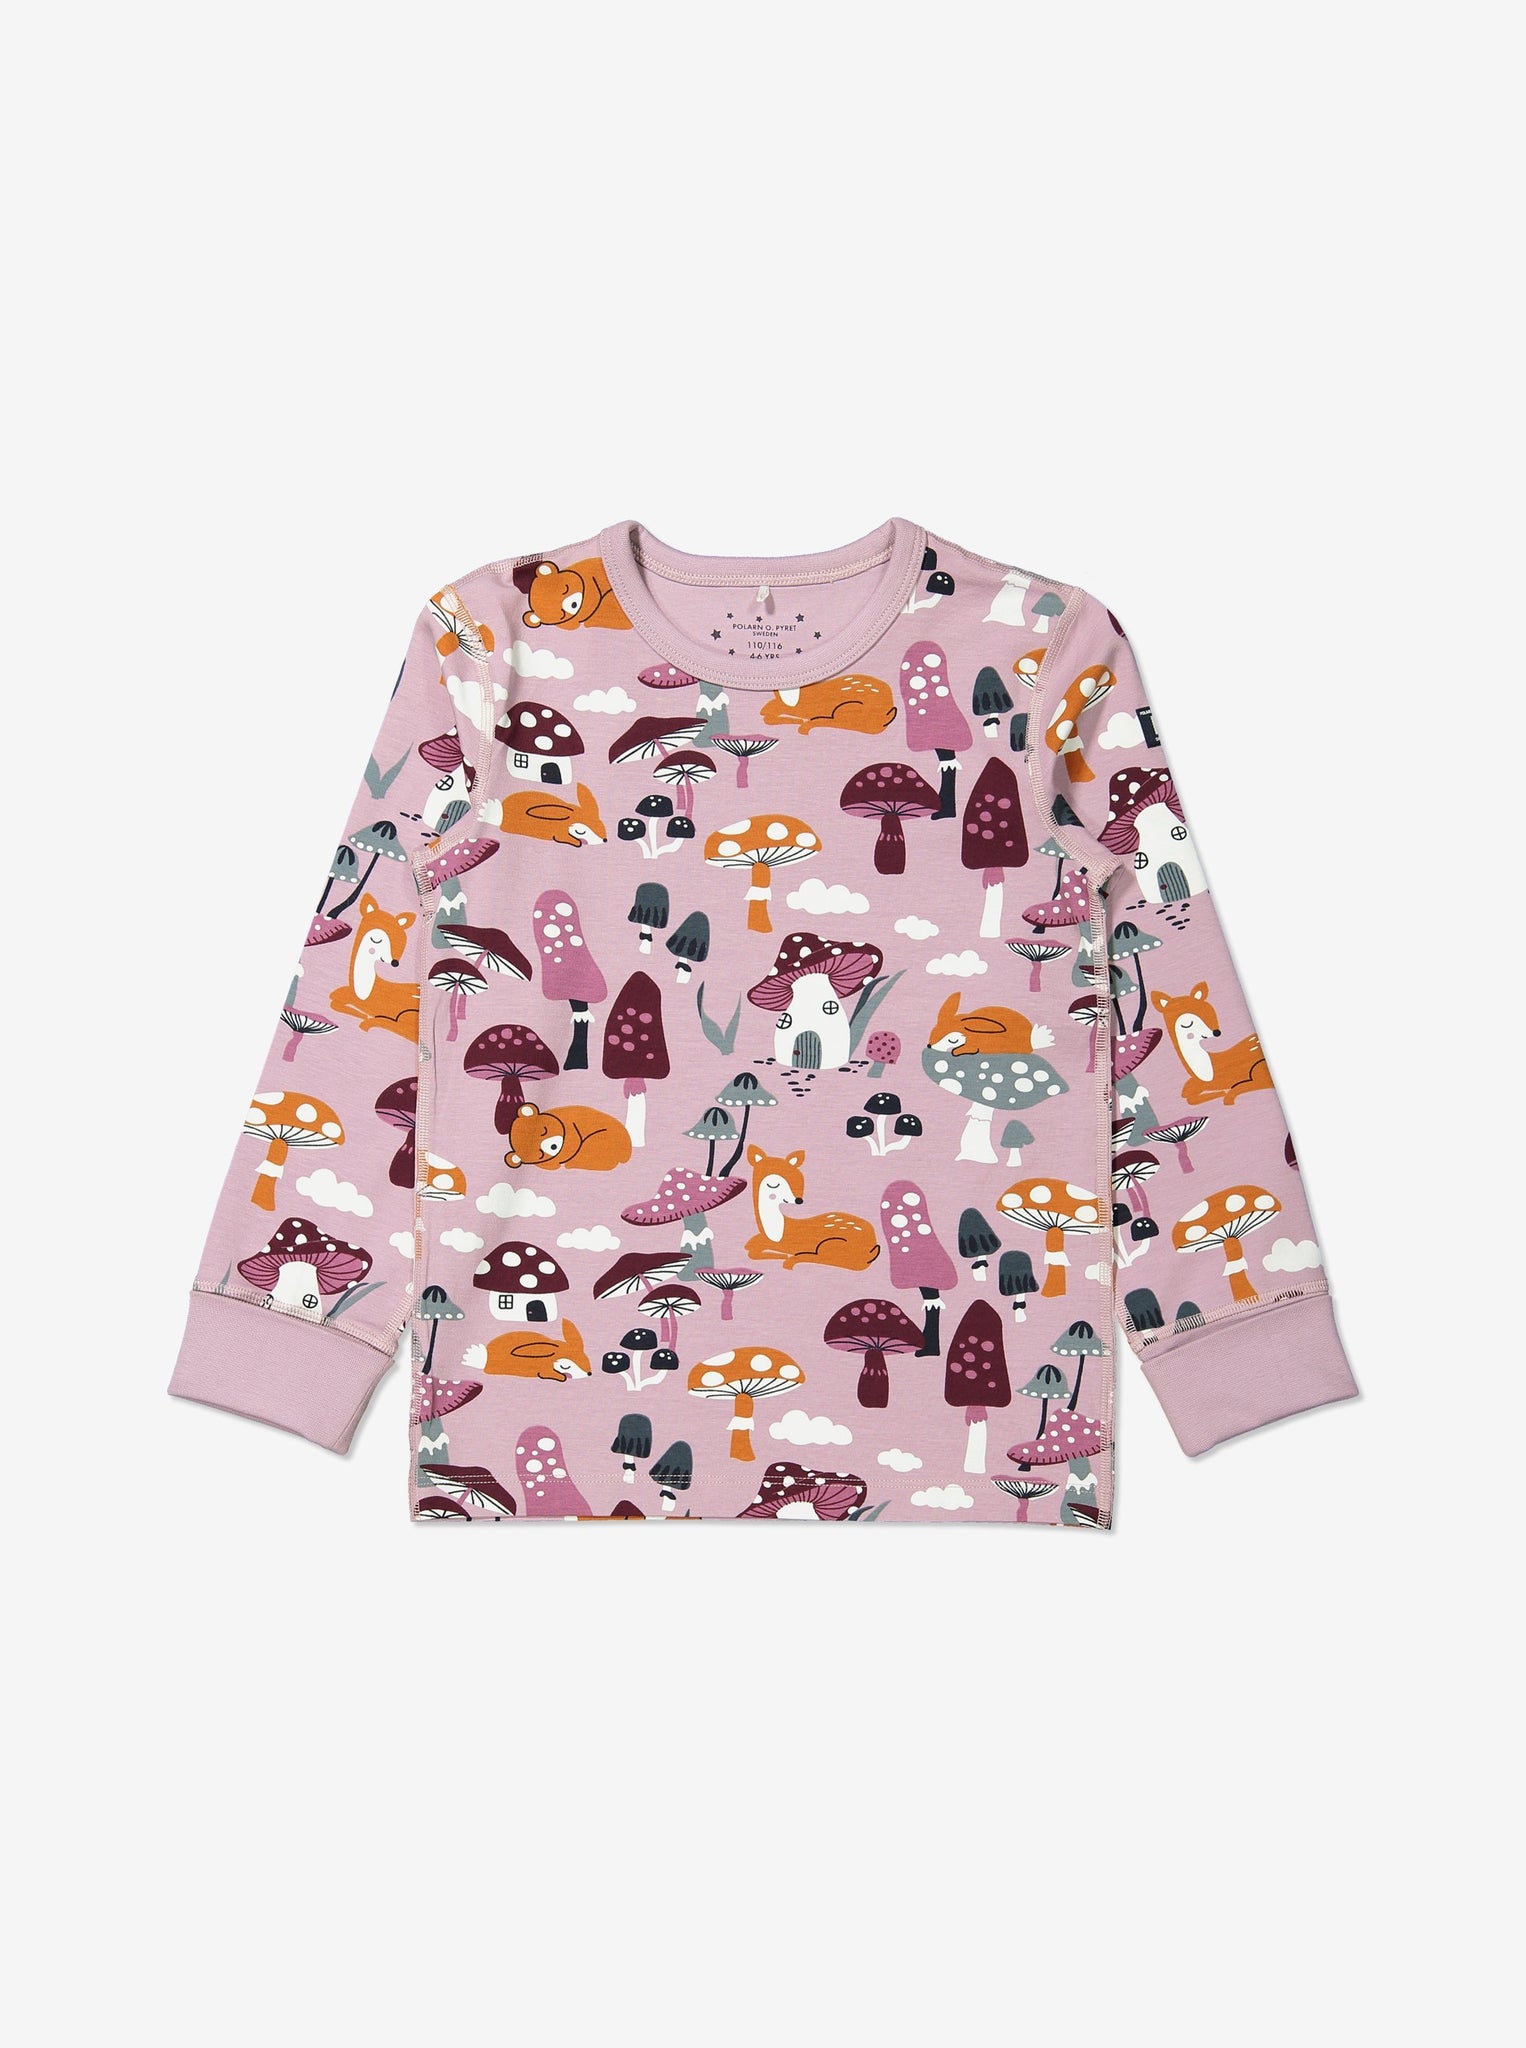 Cozy Unisex Kids Pyjamas, Ethical Kids Clothes| Polarn O. Pyret UK